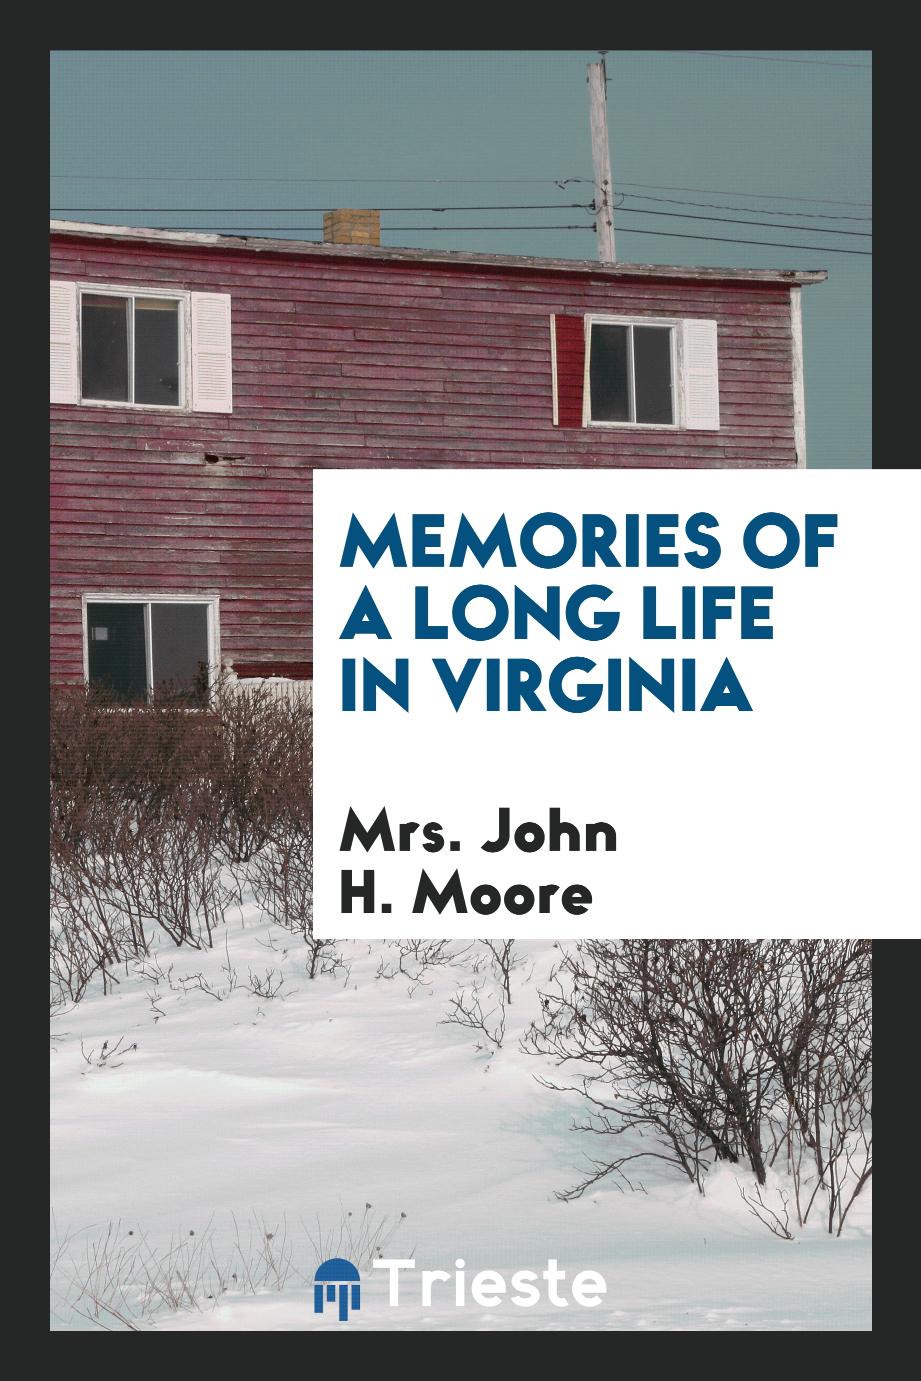 Memories of a long life in Virginia